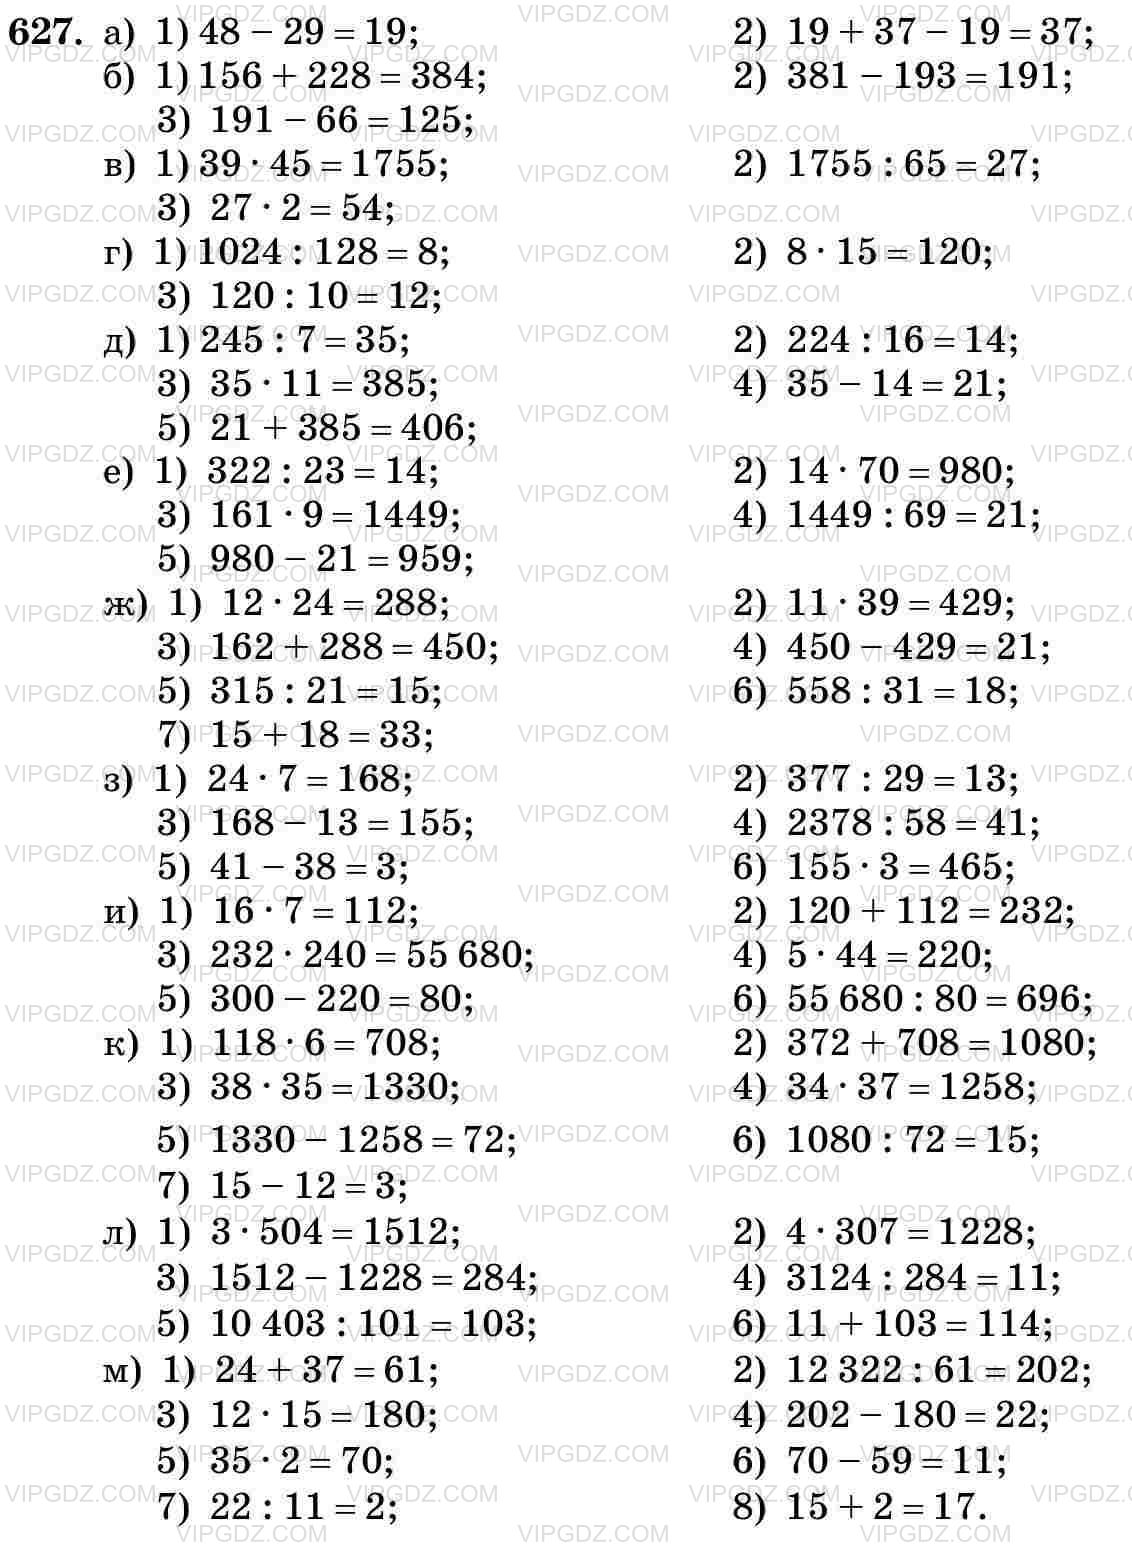 Фото ответа 3 на Задание 627 из ГДЗ по Математике за 5 класс: Н. Я. Виленкин, В. И. Жохов, А. С. Чесноков, С. И. Шварцбурд. 2013г.